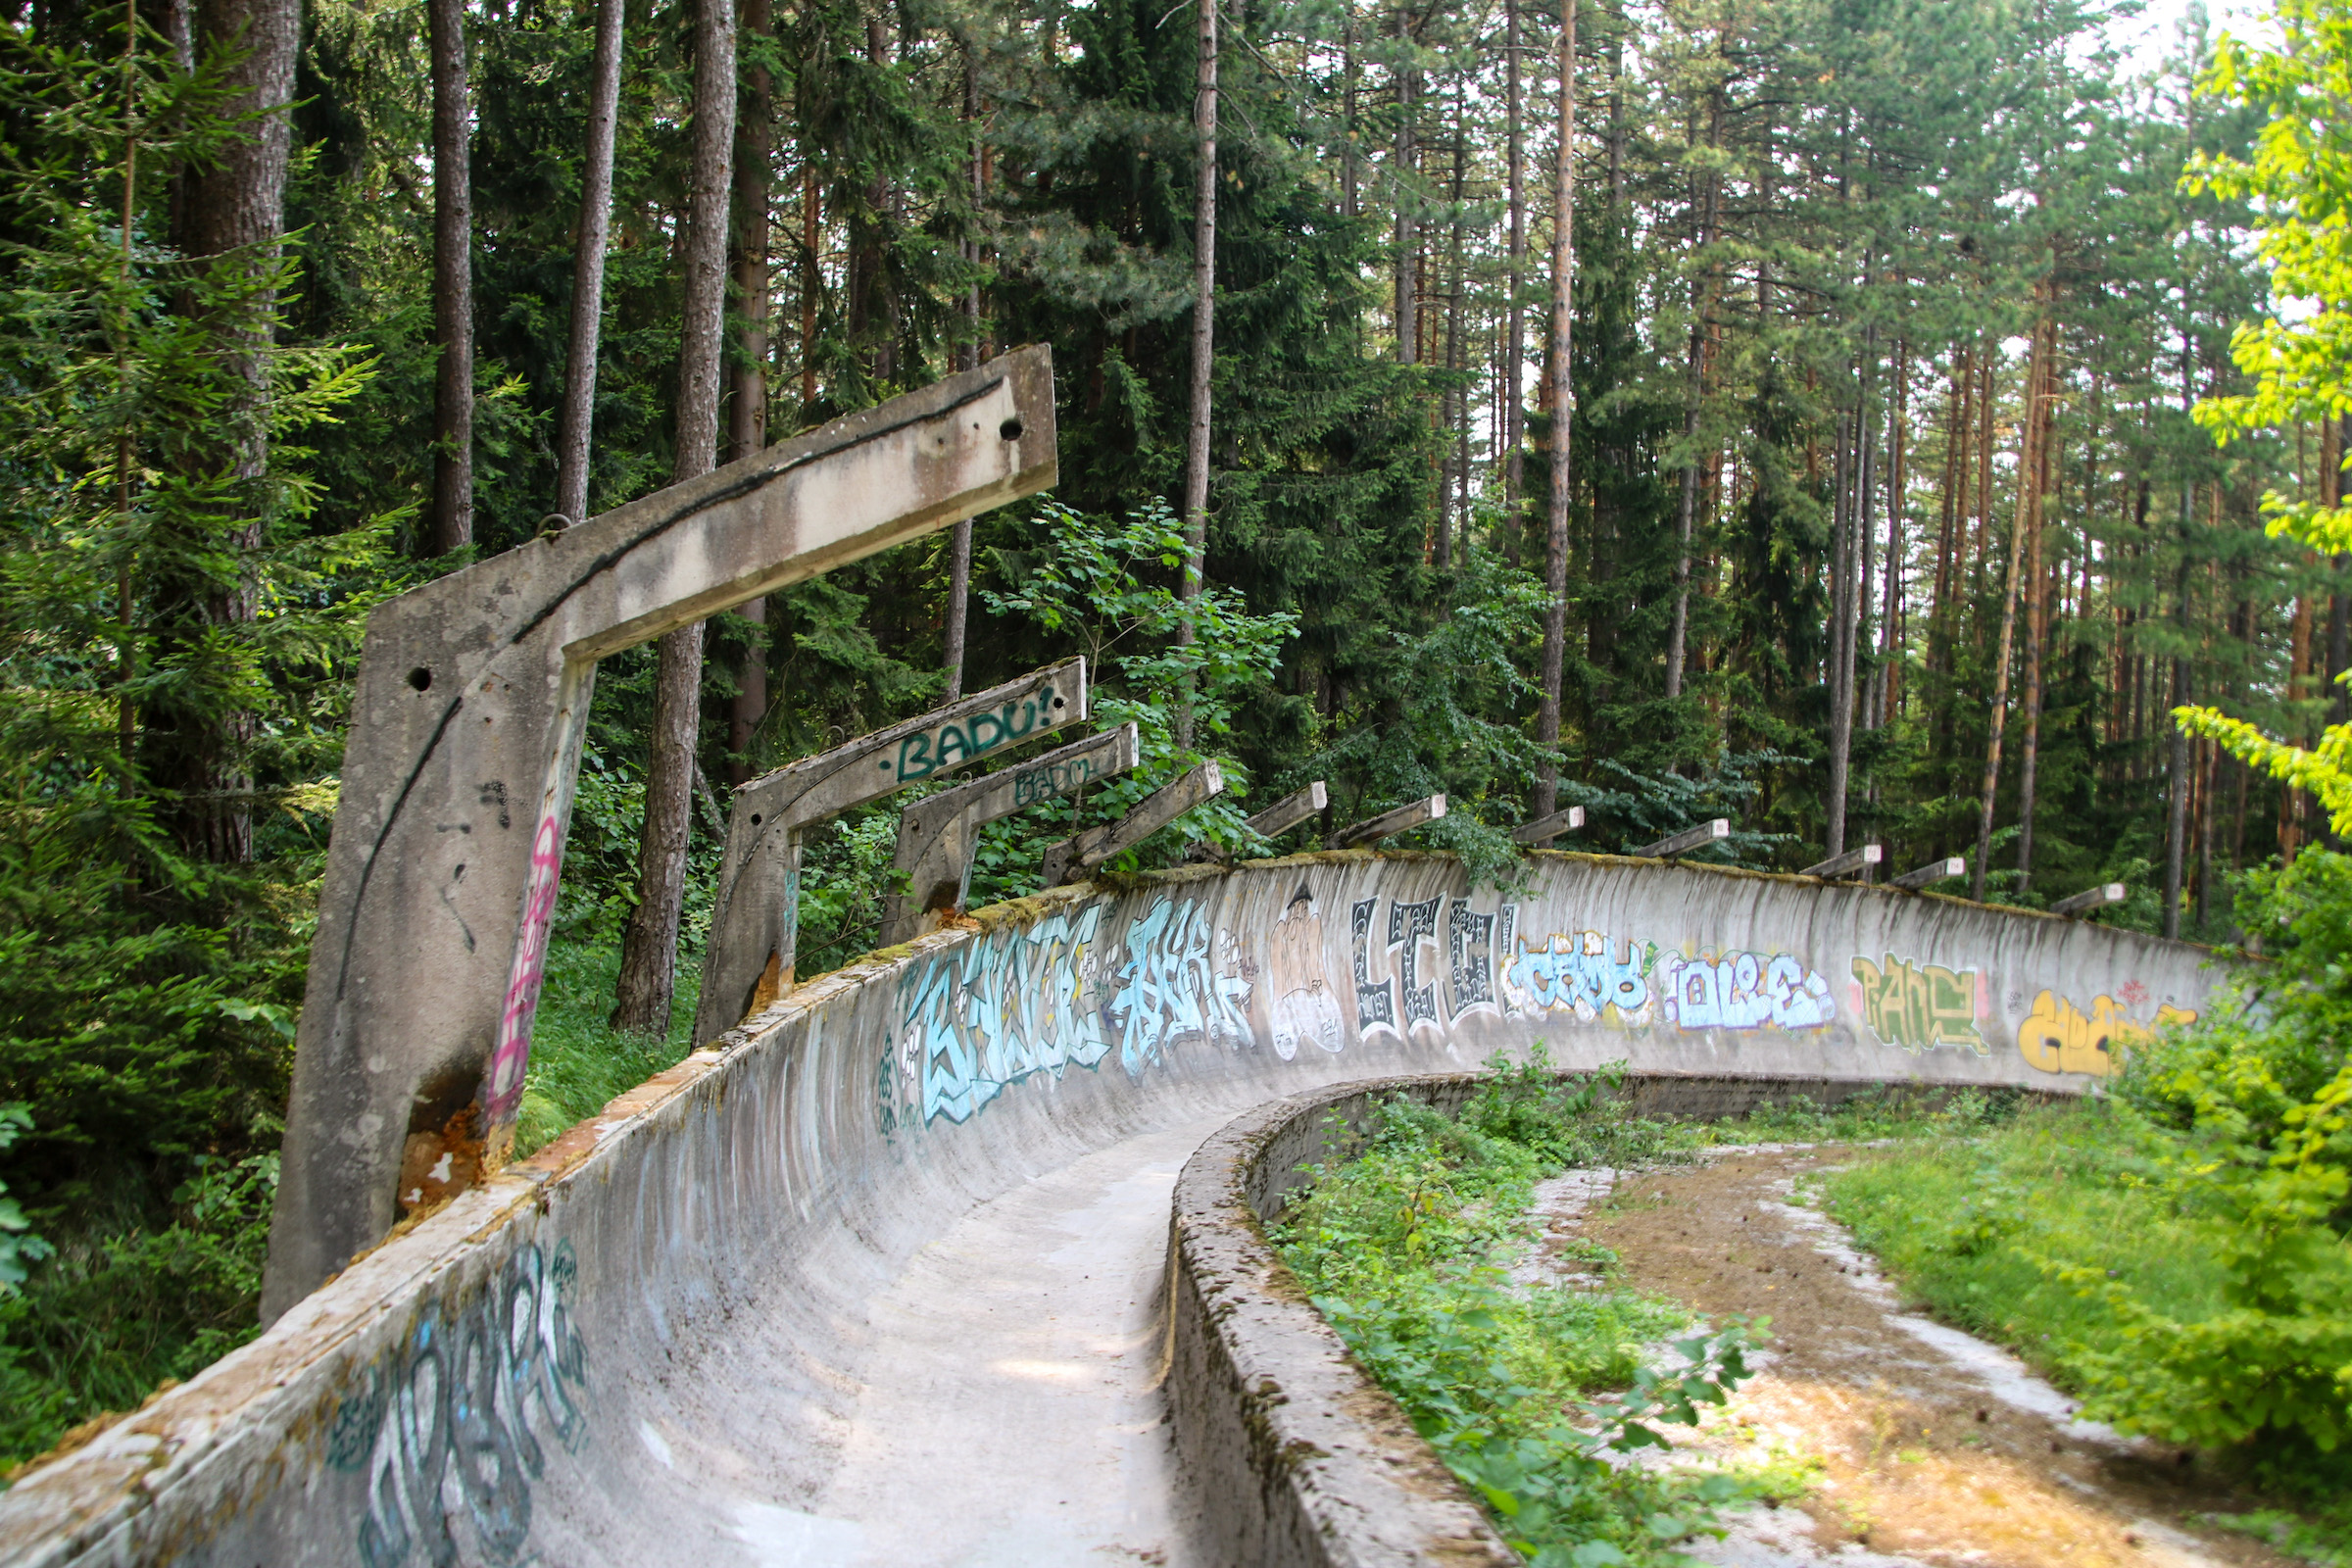 Sarajevo Bobsled Track